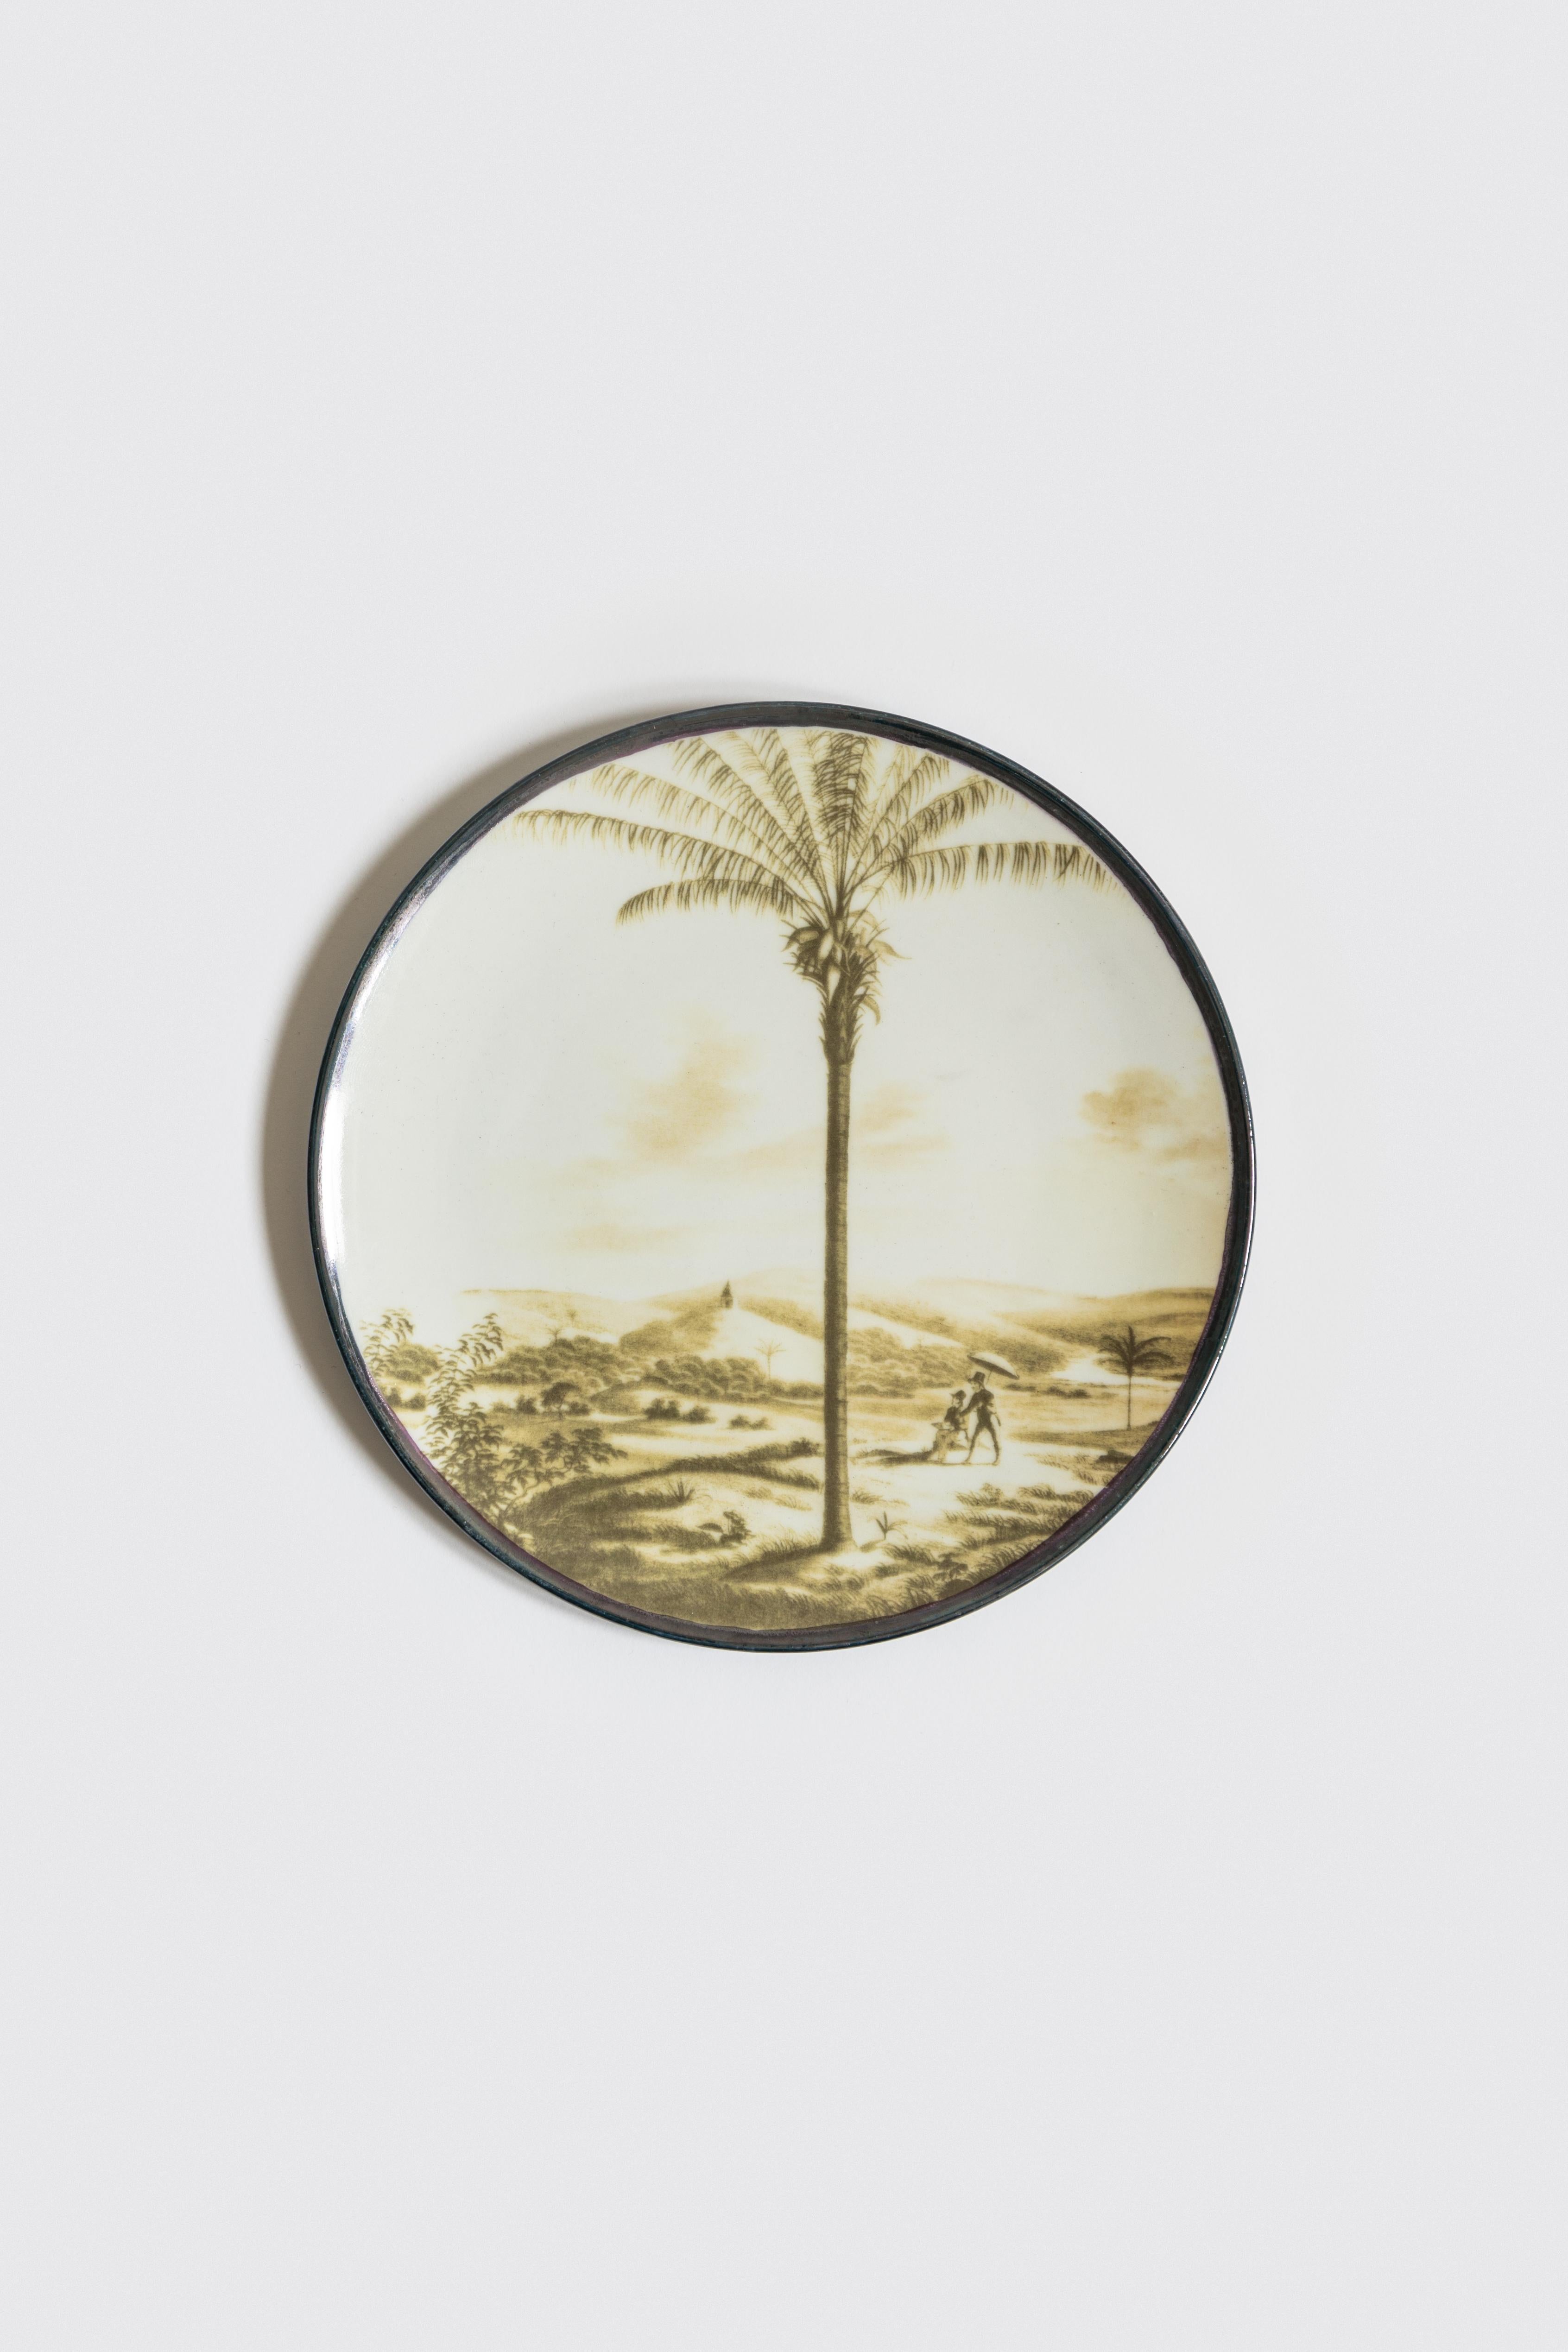 Die Las Palmas Porcelain Collection verdankt ihren Namen der Stadt Palmas in Brasilien. Es ist eine wahre Hommage an die Palmen, ob es nun ihre Blätter, die ganze Pflanze oder sogar die Landschaft ist, in der sie leben und gedeihen. Die